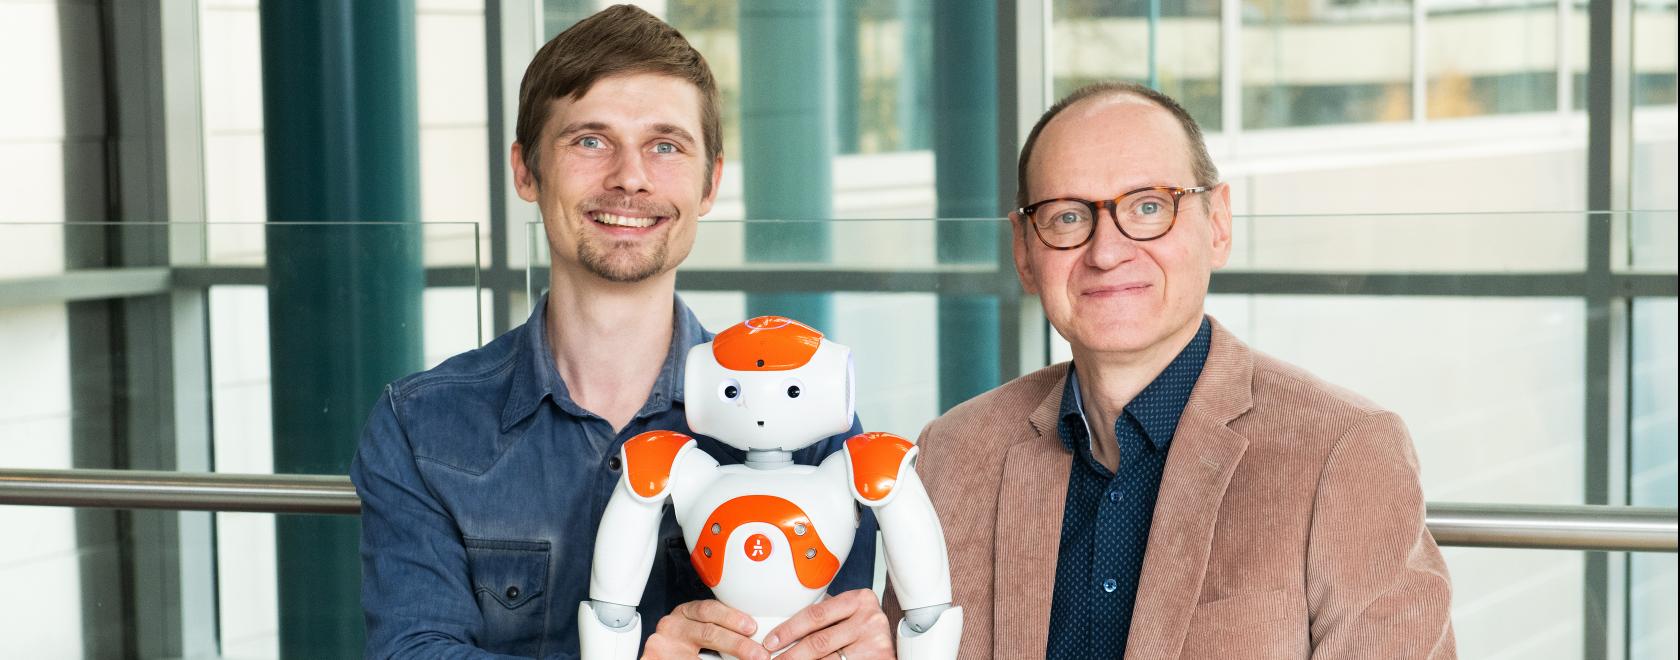 Professori Jari Hietanen ja työryhmä saivat 11.5.2018 Pirkanmaan rahastolta 130 000 euron apurahan robottien ja ihmisen välistä vuorovaikutusta käsittelevään monitieteiseen hankkeeseen.